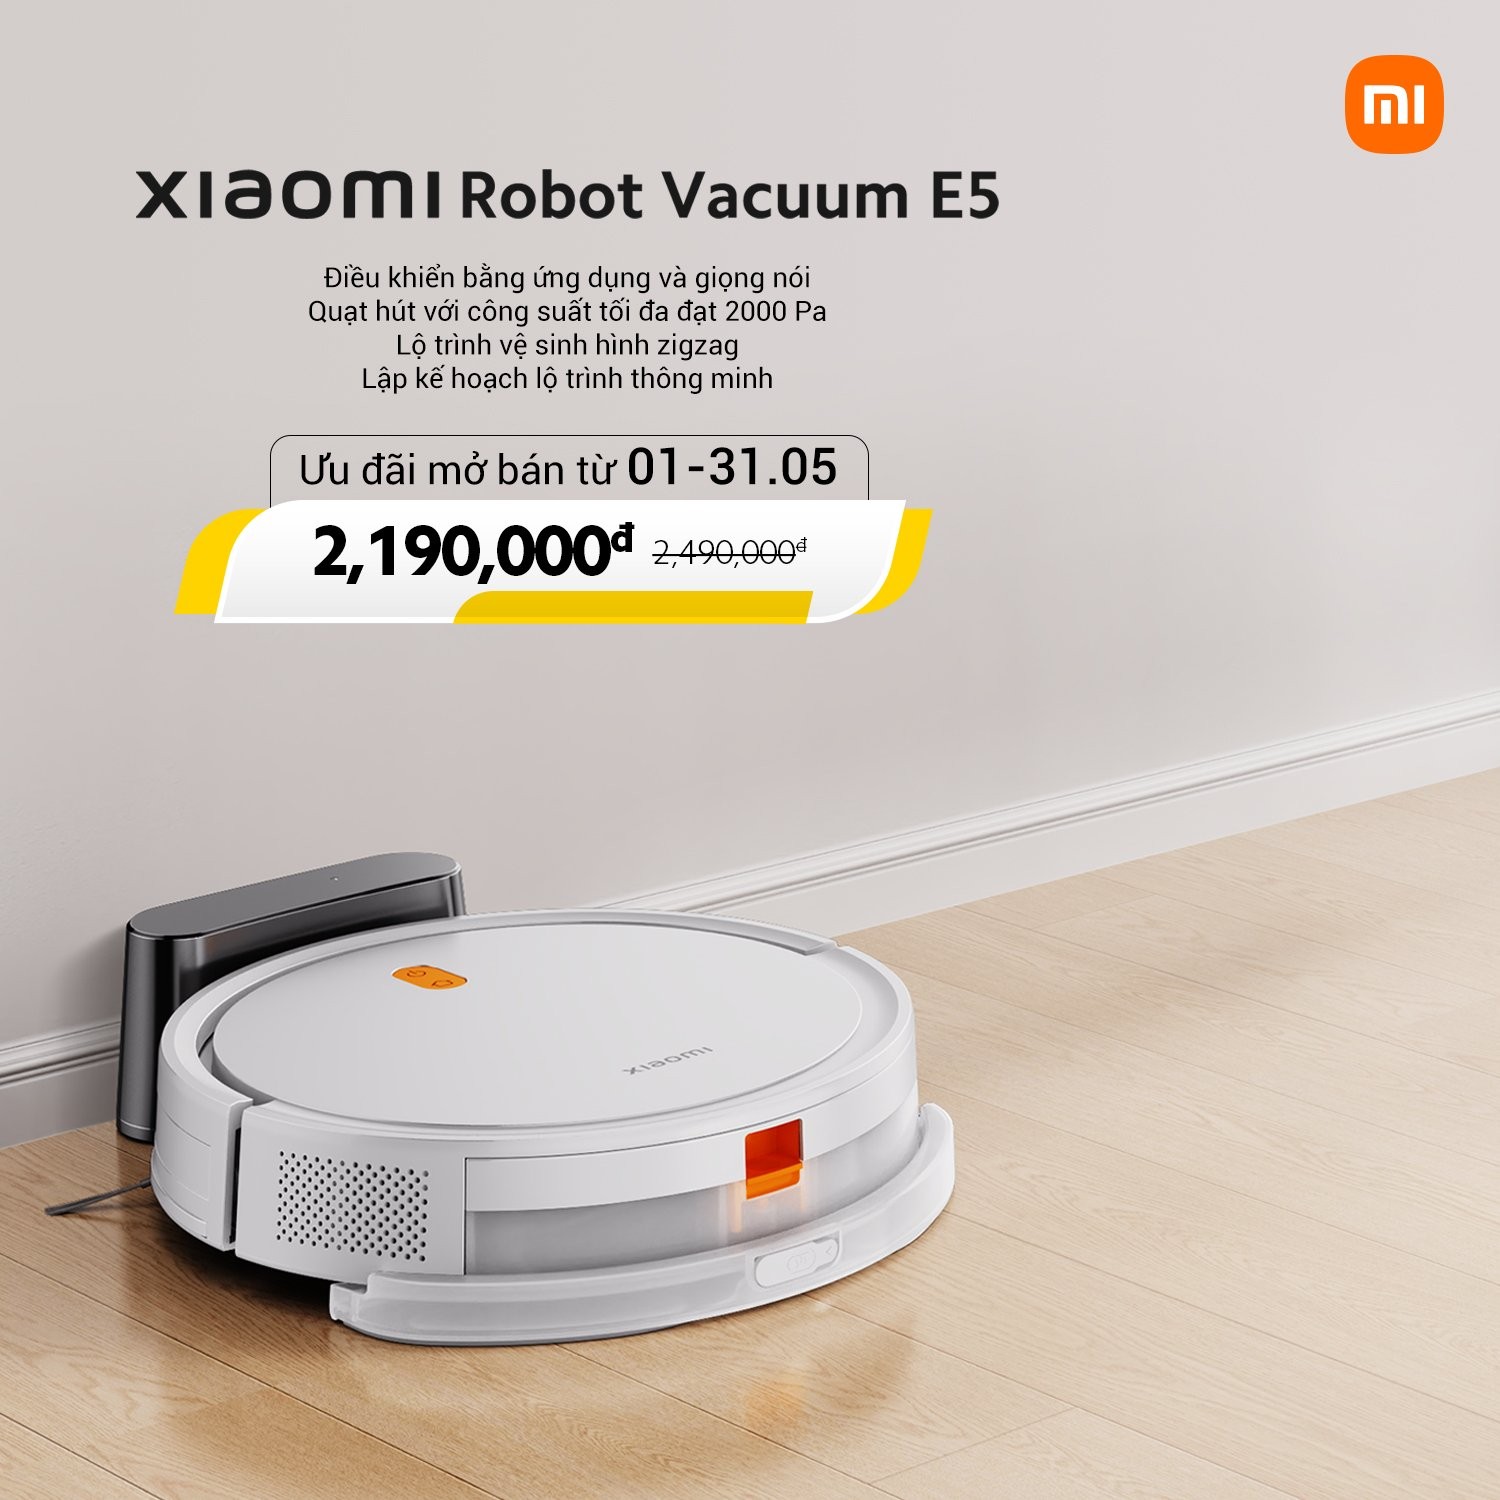 xiaomi-robot-vacuum-1-1714638566.jpg